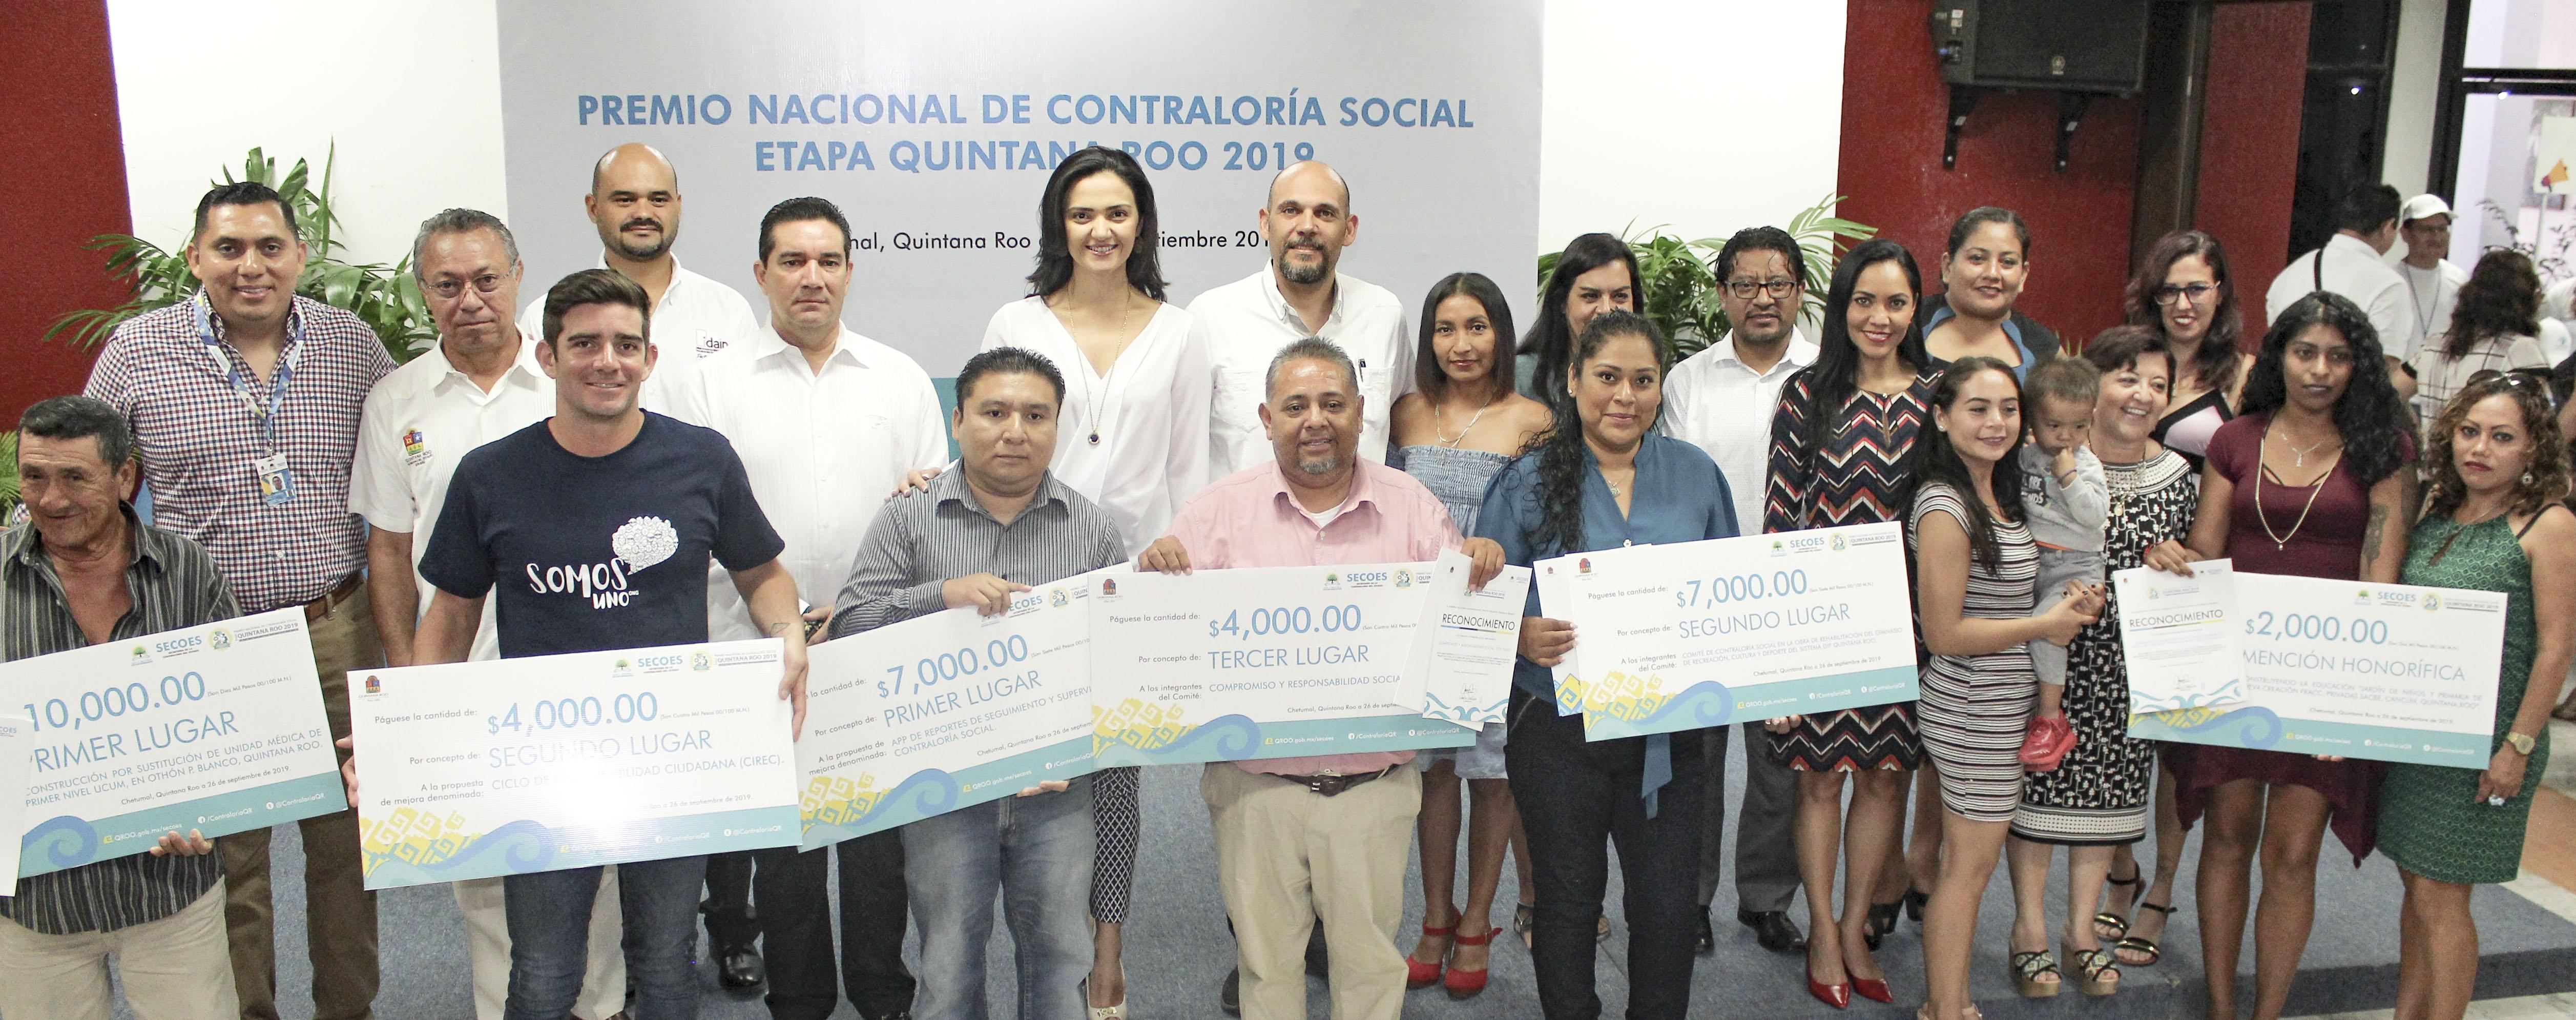 Premio Nacional de Contraloría Social 2019